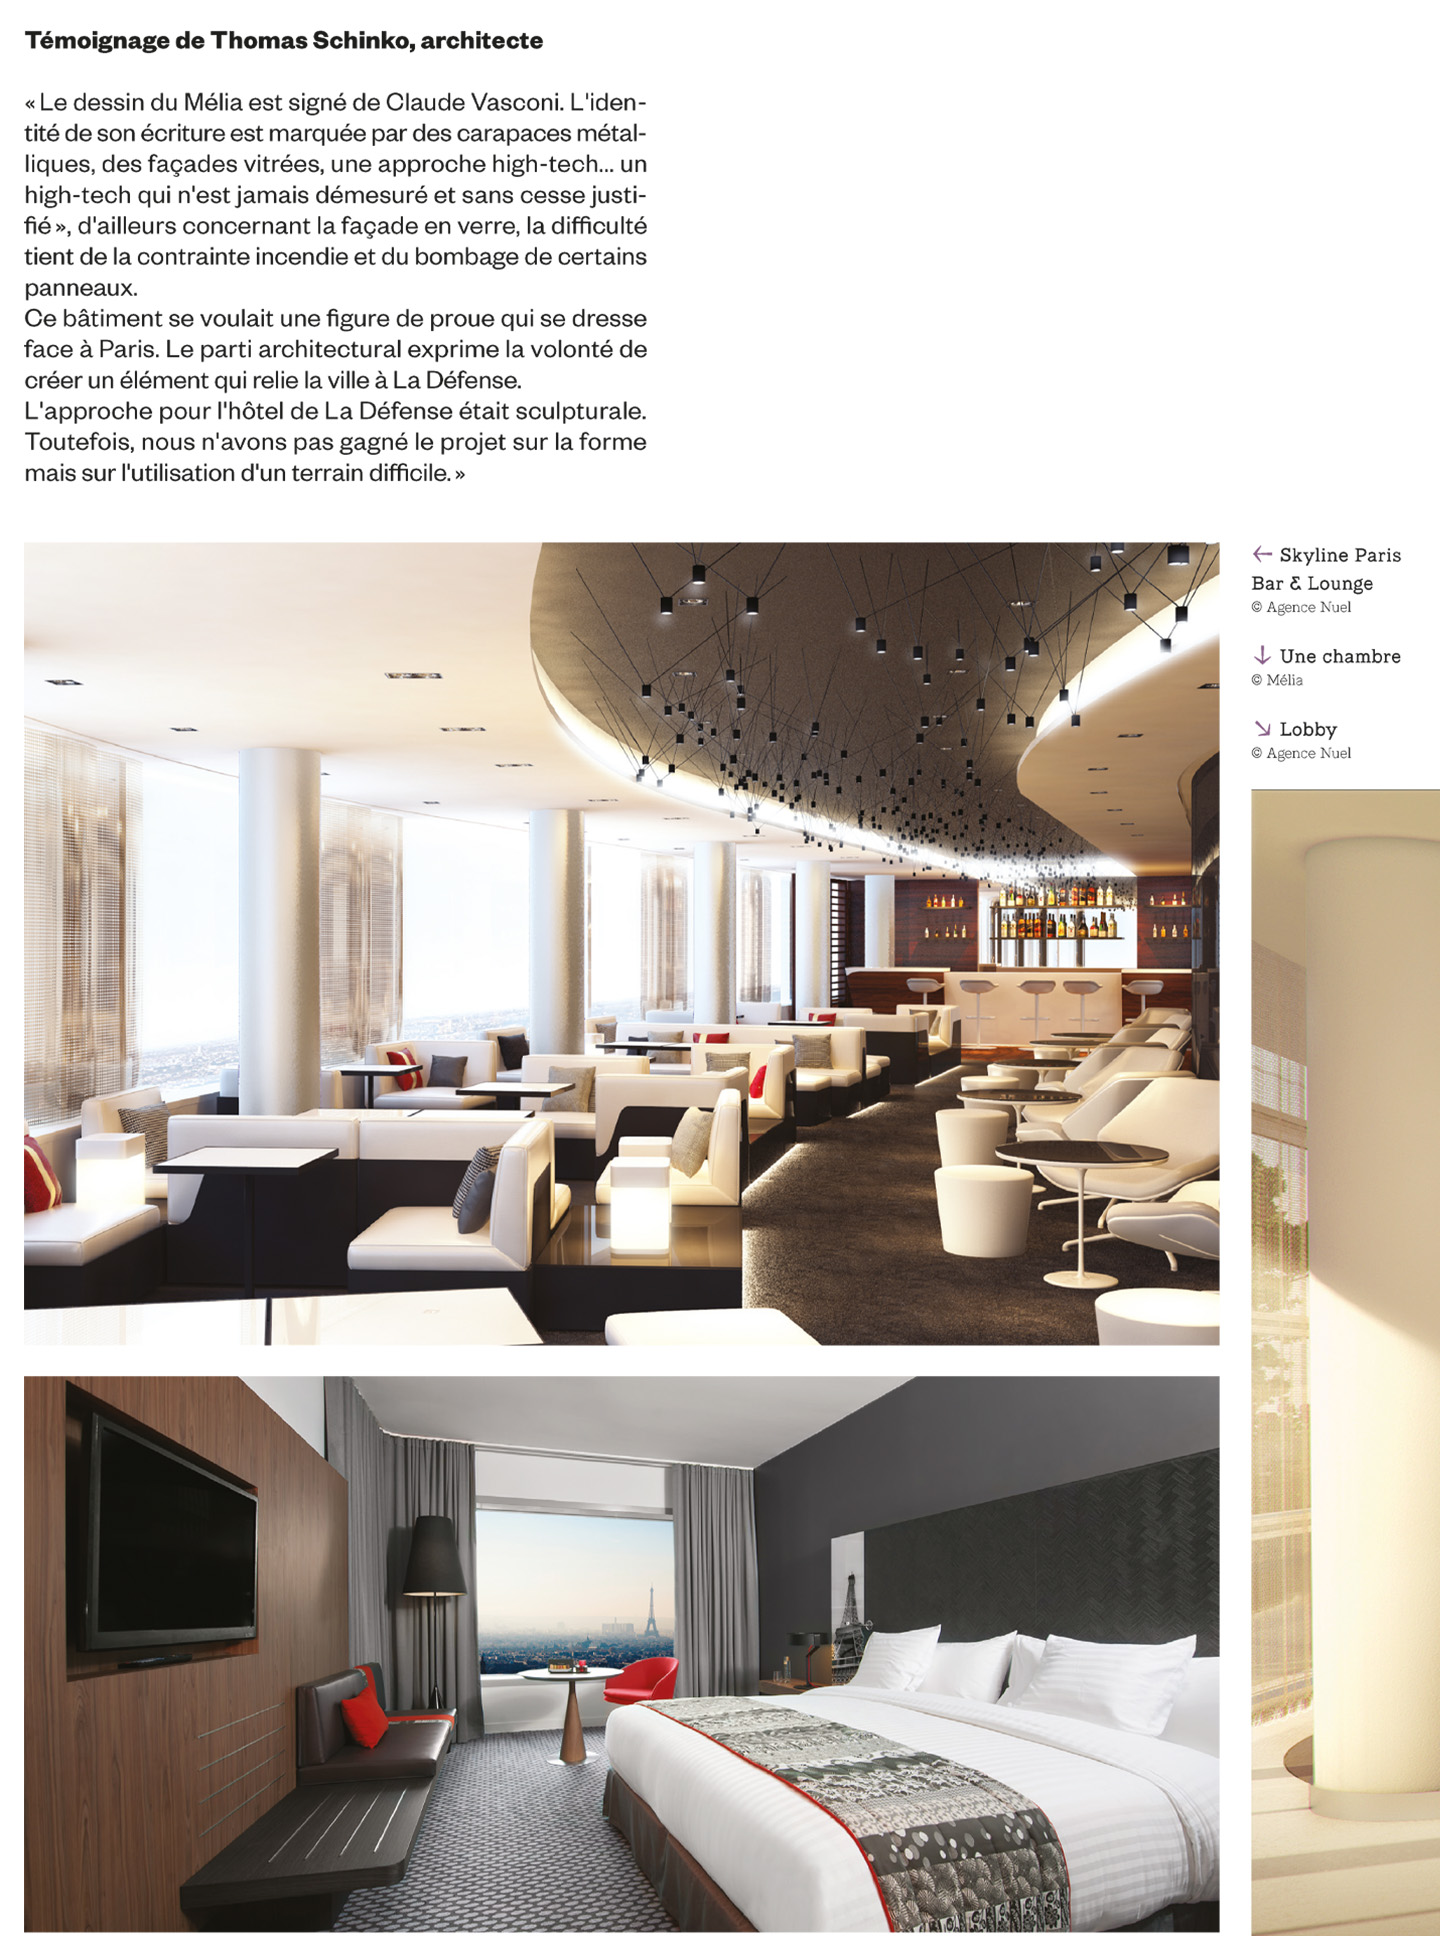 article sur l'hôtel Melia Paris La Défense, hotel de luxe à paris réalisé par le studio d'architecture d'intérieur jean-philippe nuel, dans le magazine archistorm